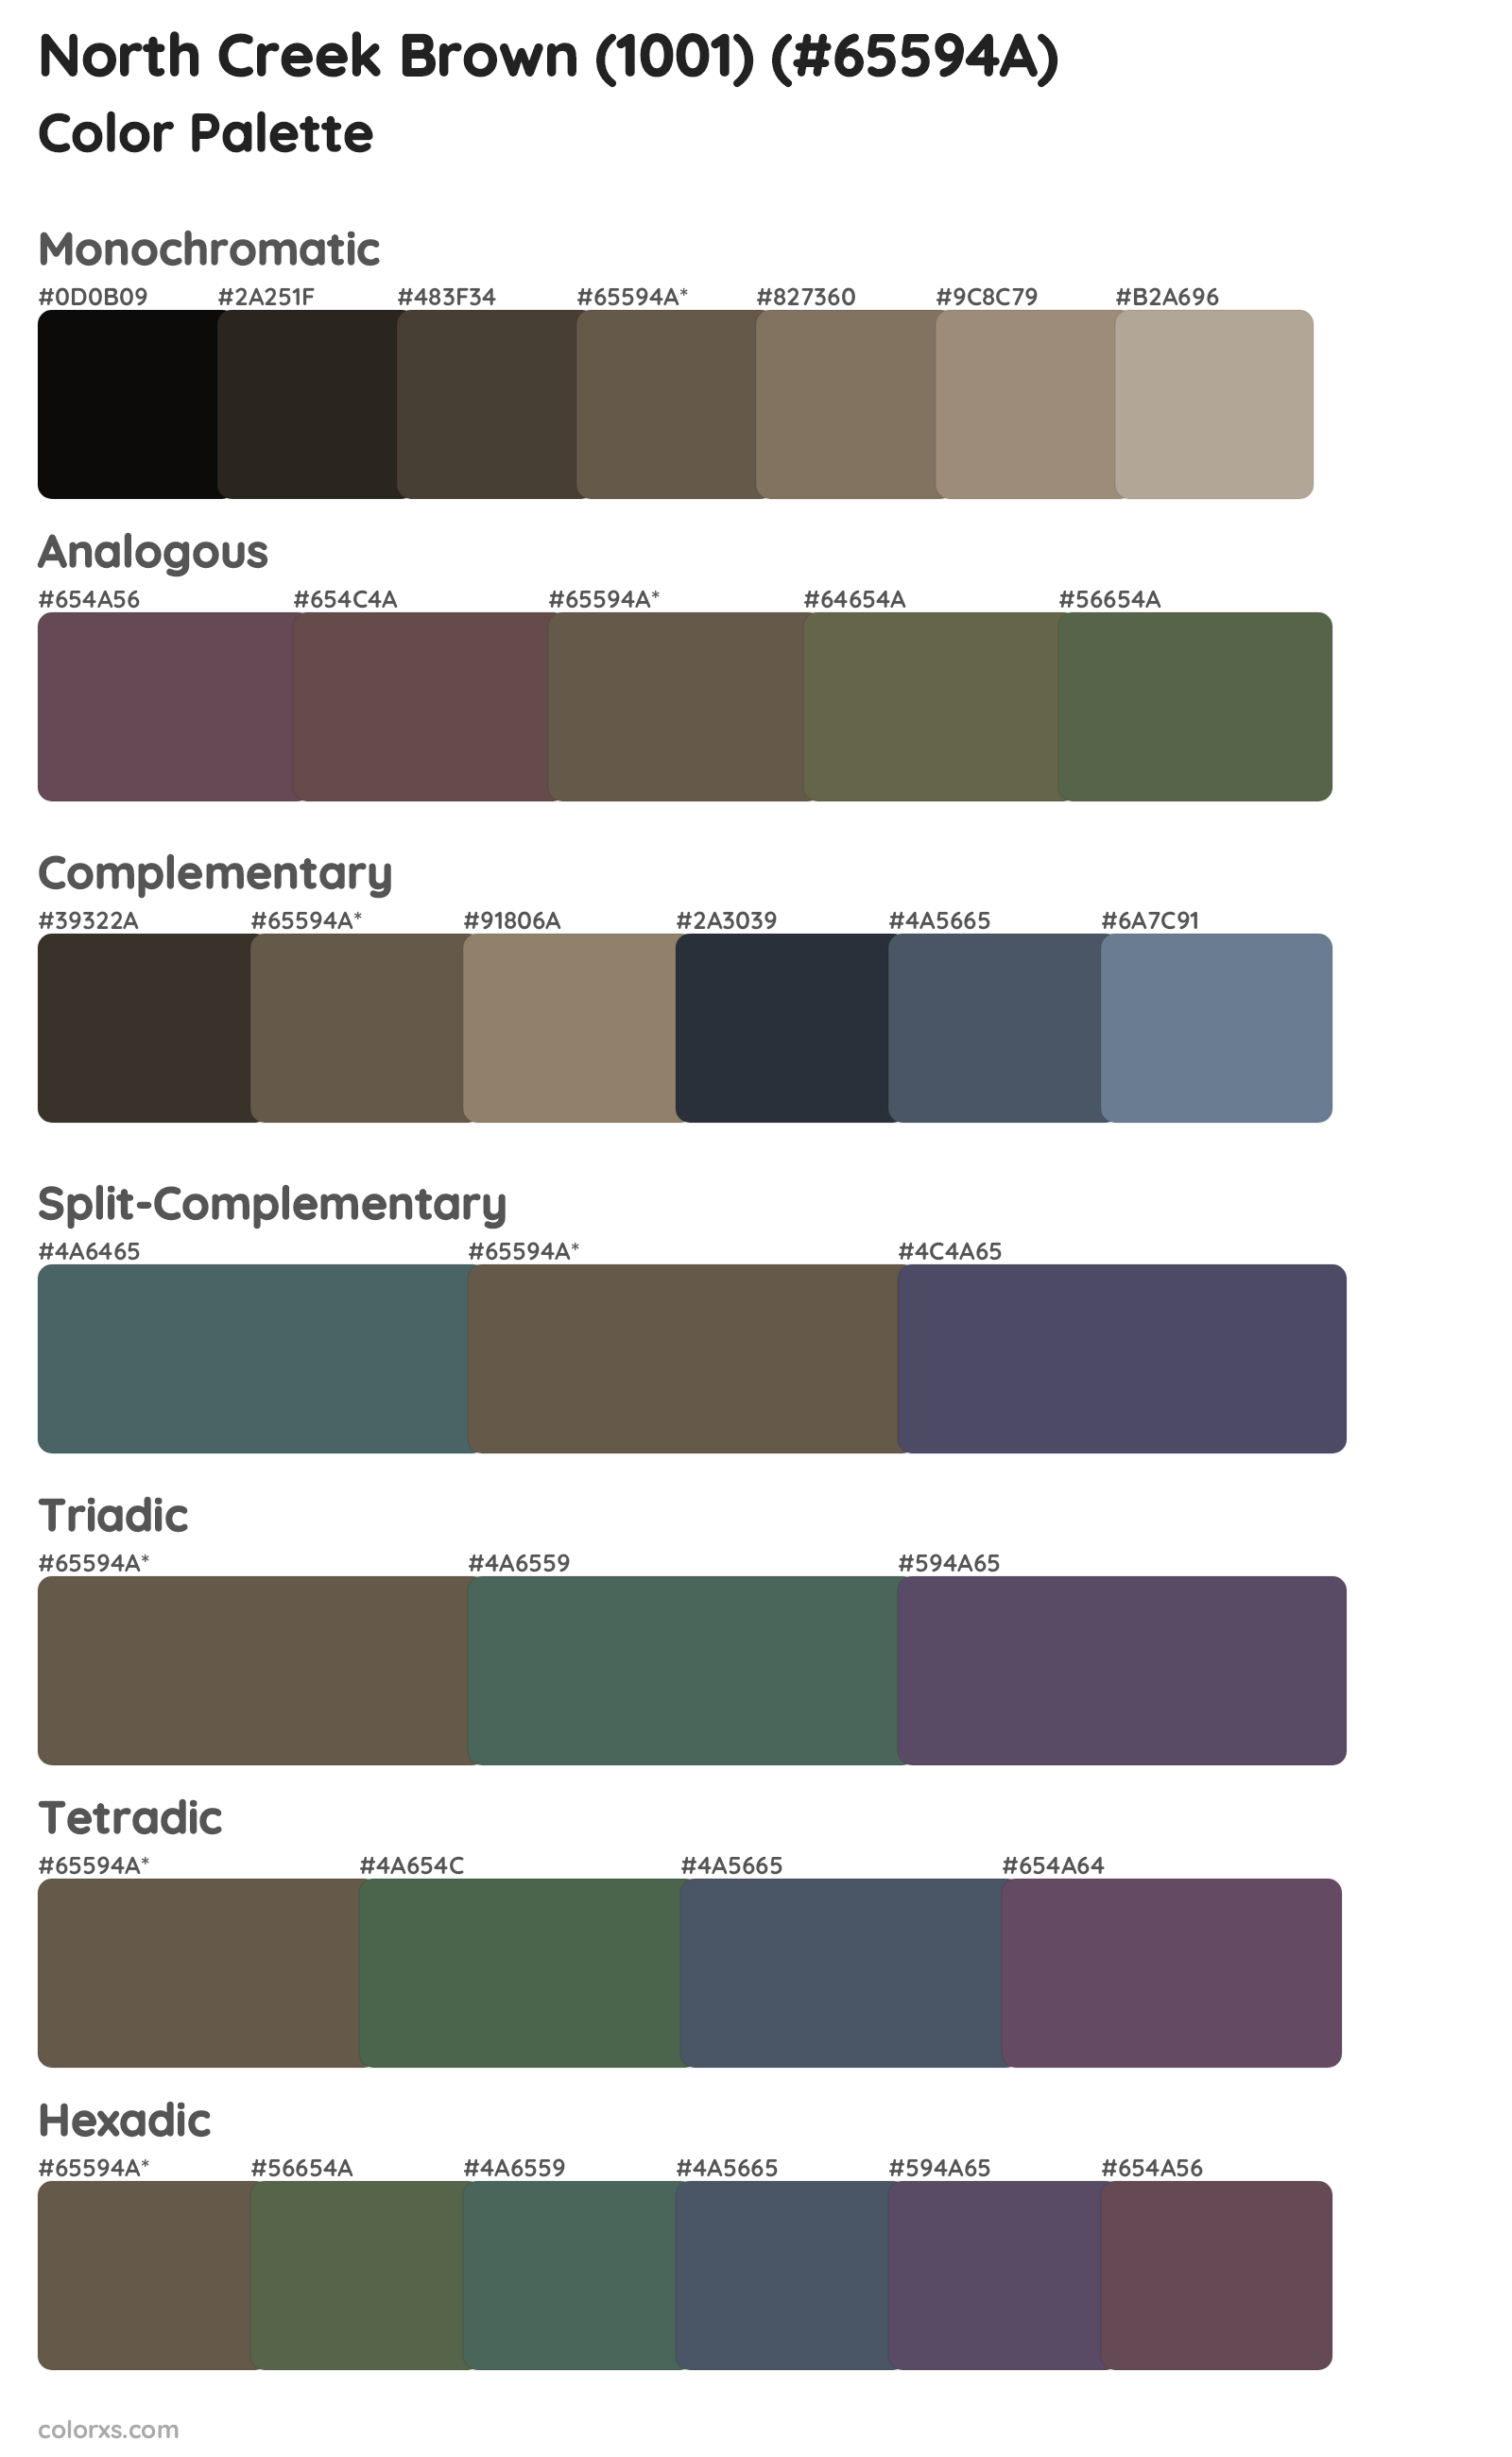 North Creek Brown (1001) Color Scheme Palettes